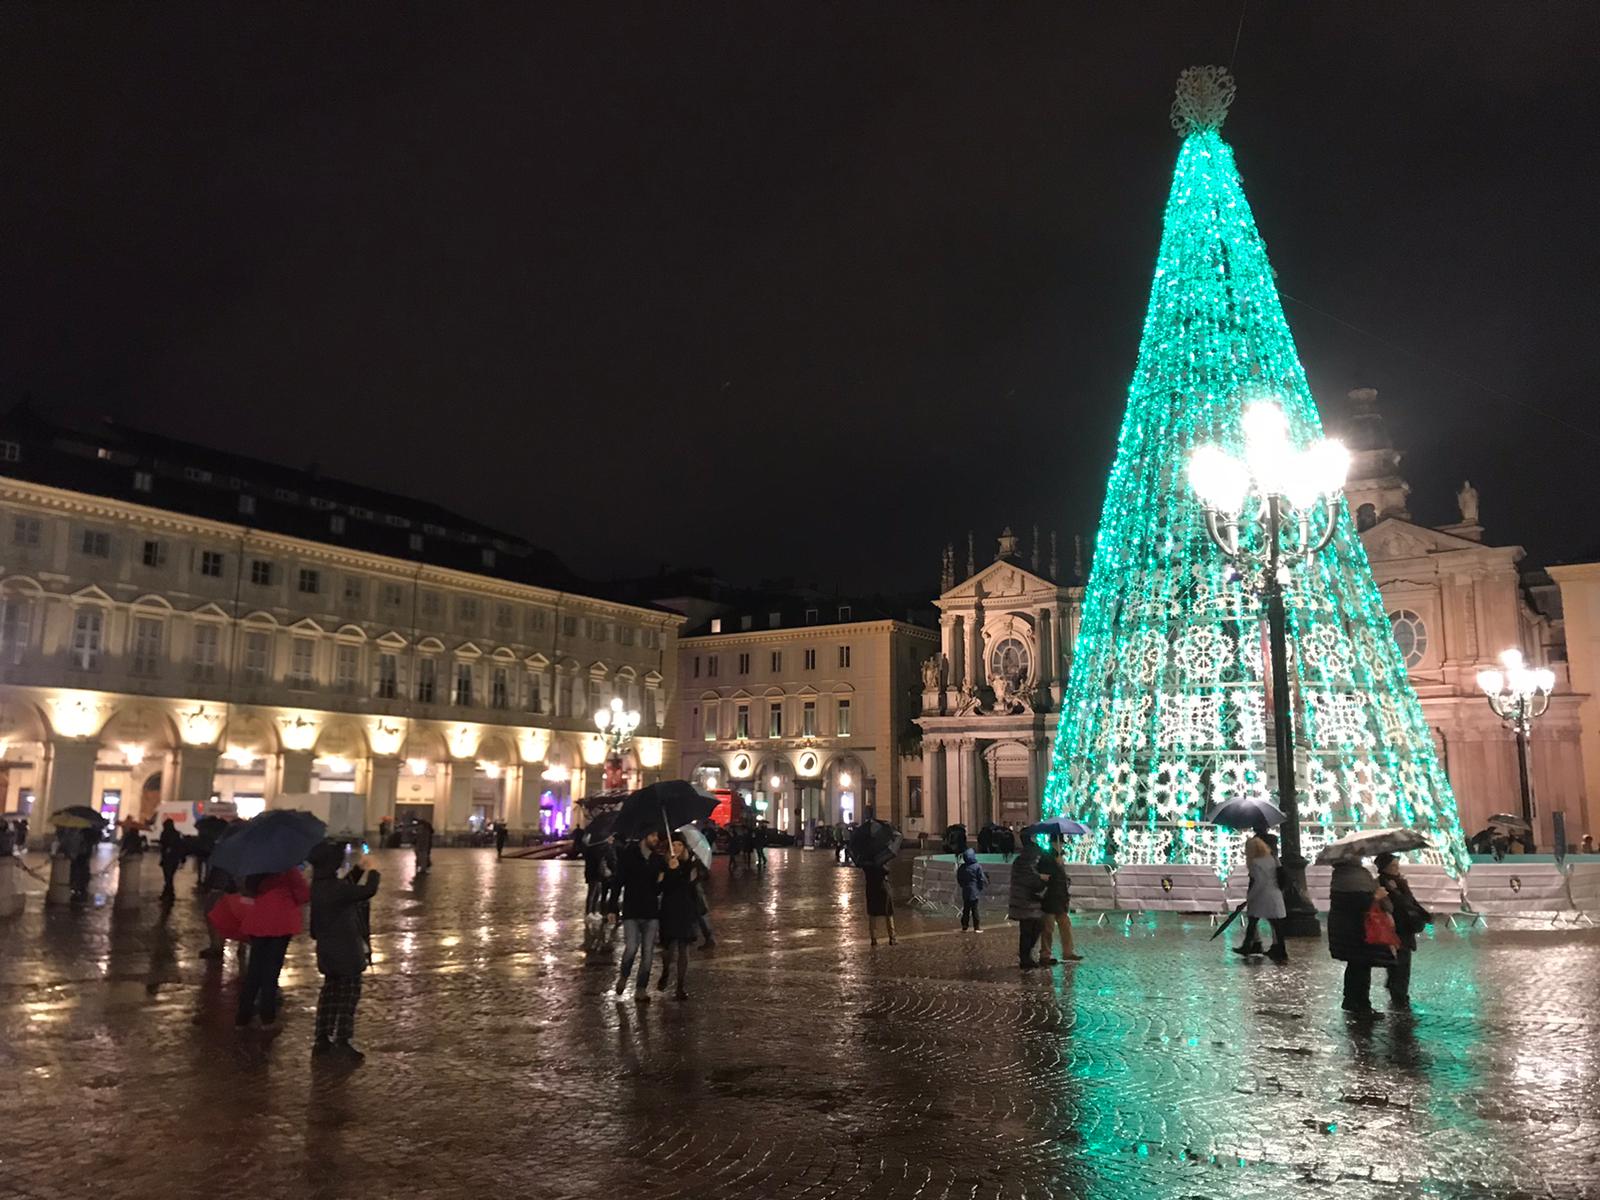 Albero Di Natale A Torino.Si Accende L Albero Di Piazza San Carlo A Torino Si Respira La Magia Del Natale Foto E Video Torino Oggi